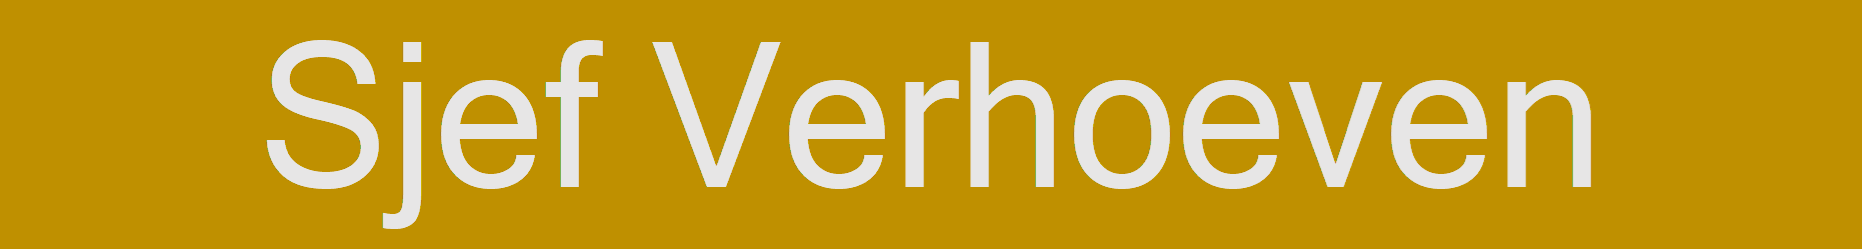 Sjef Verhoeven logo